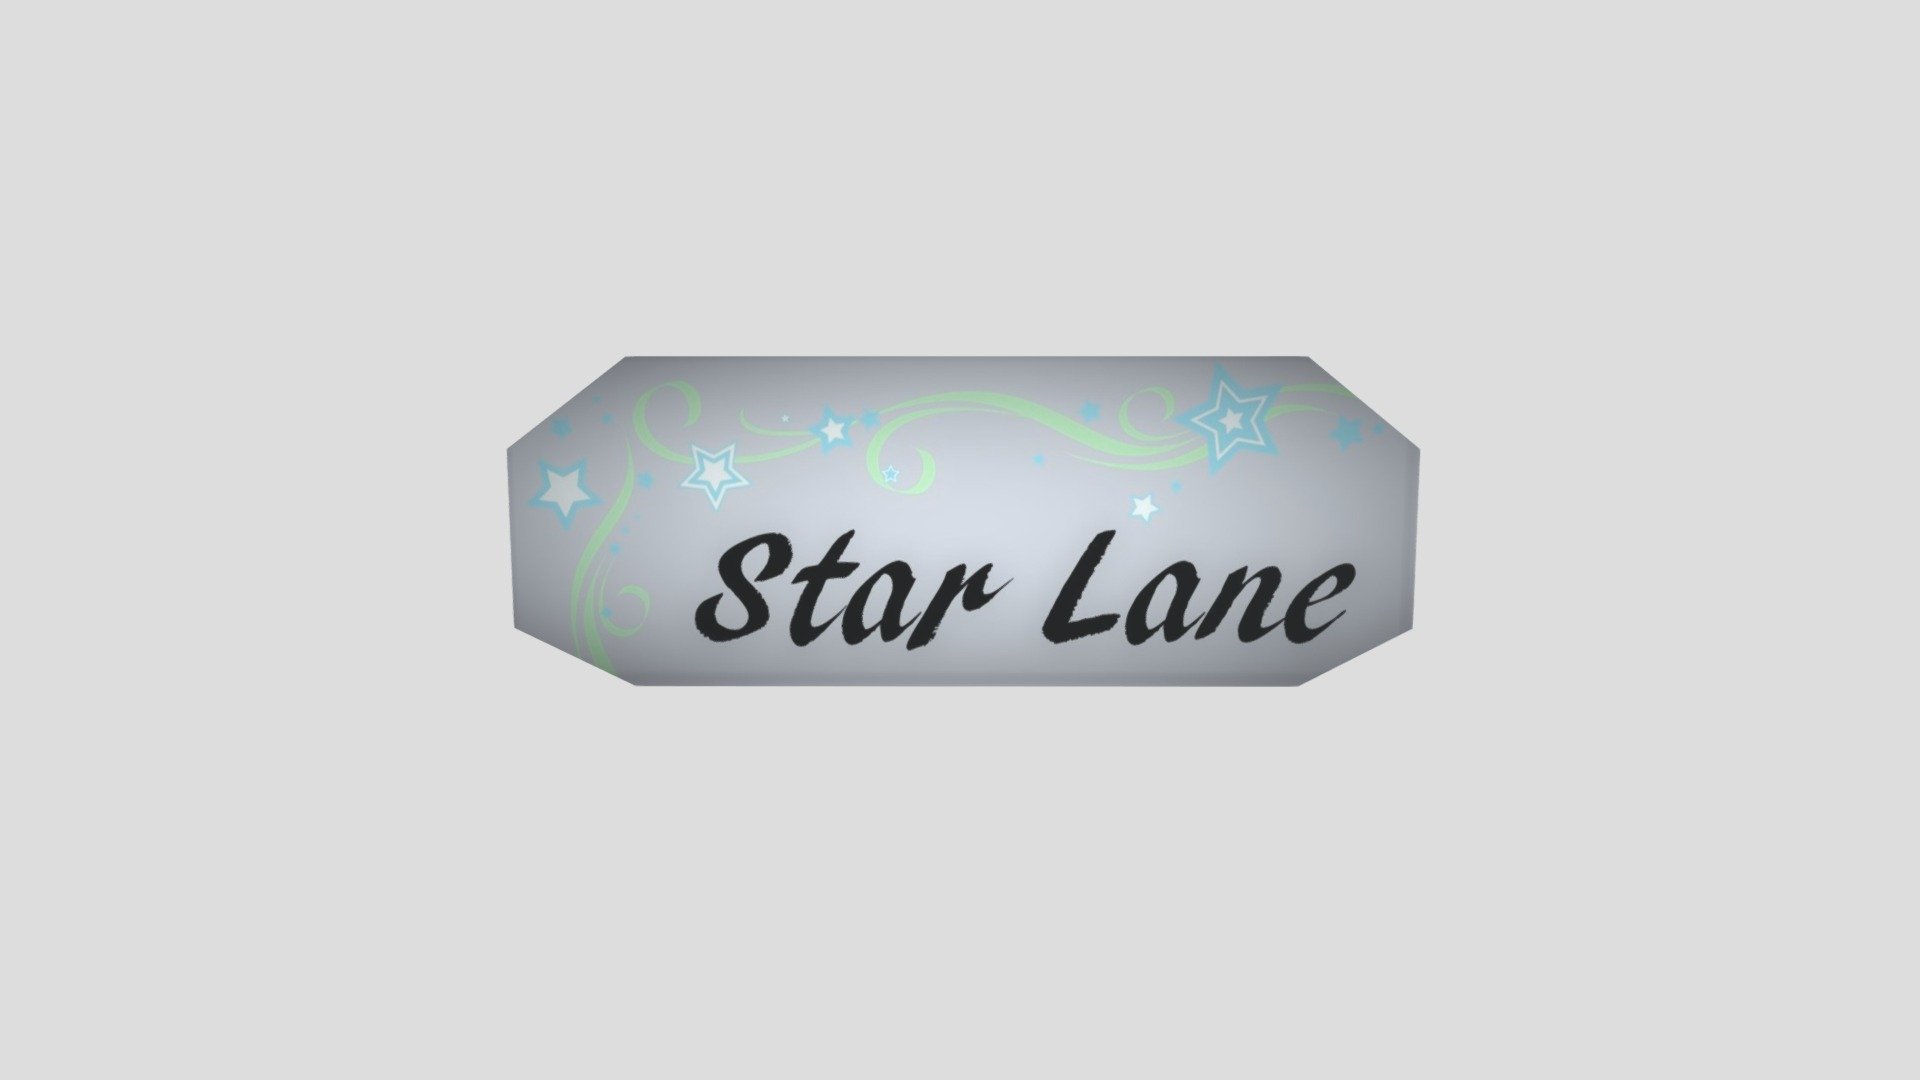 OCF Street Sign Star Lane